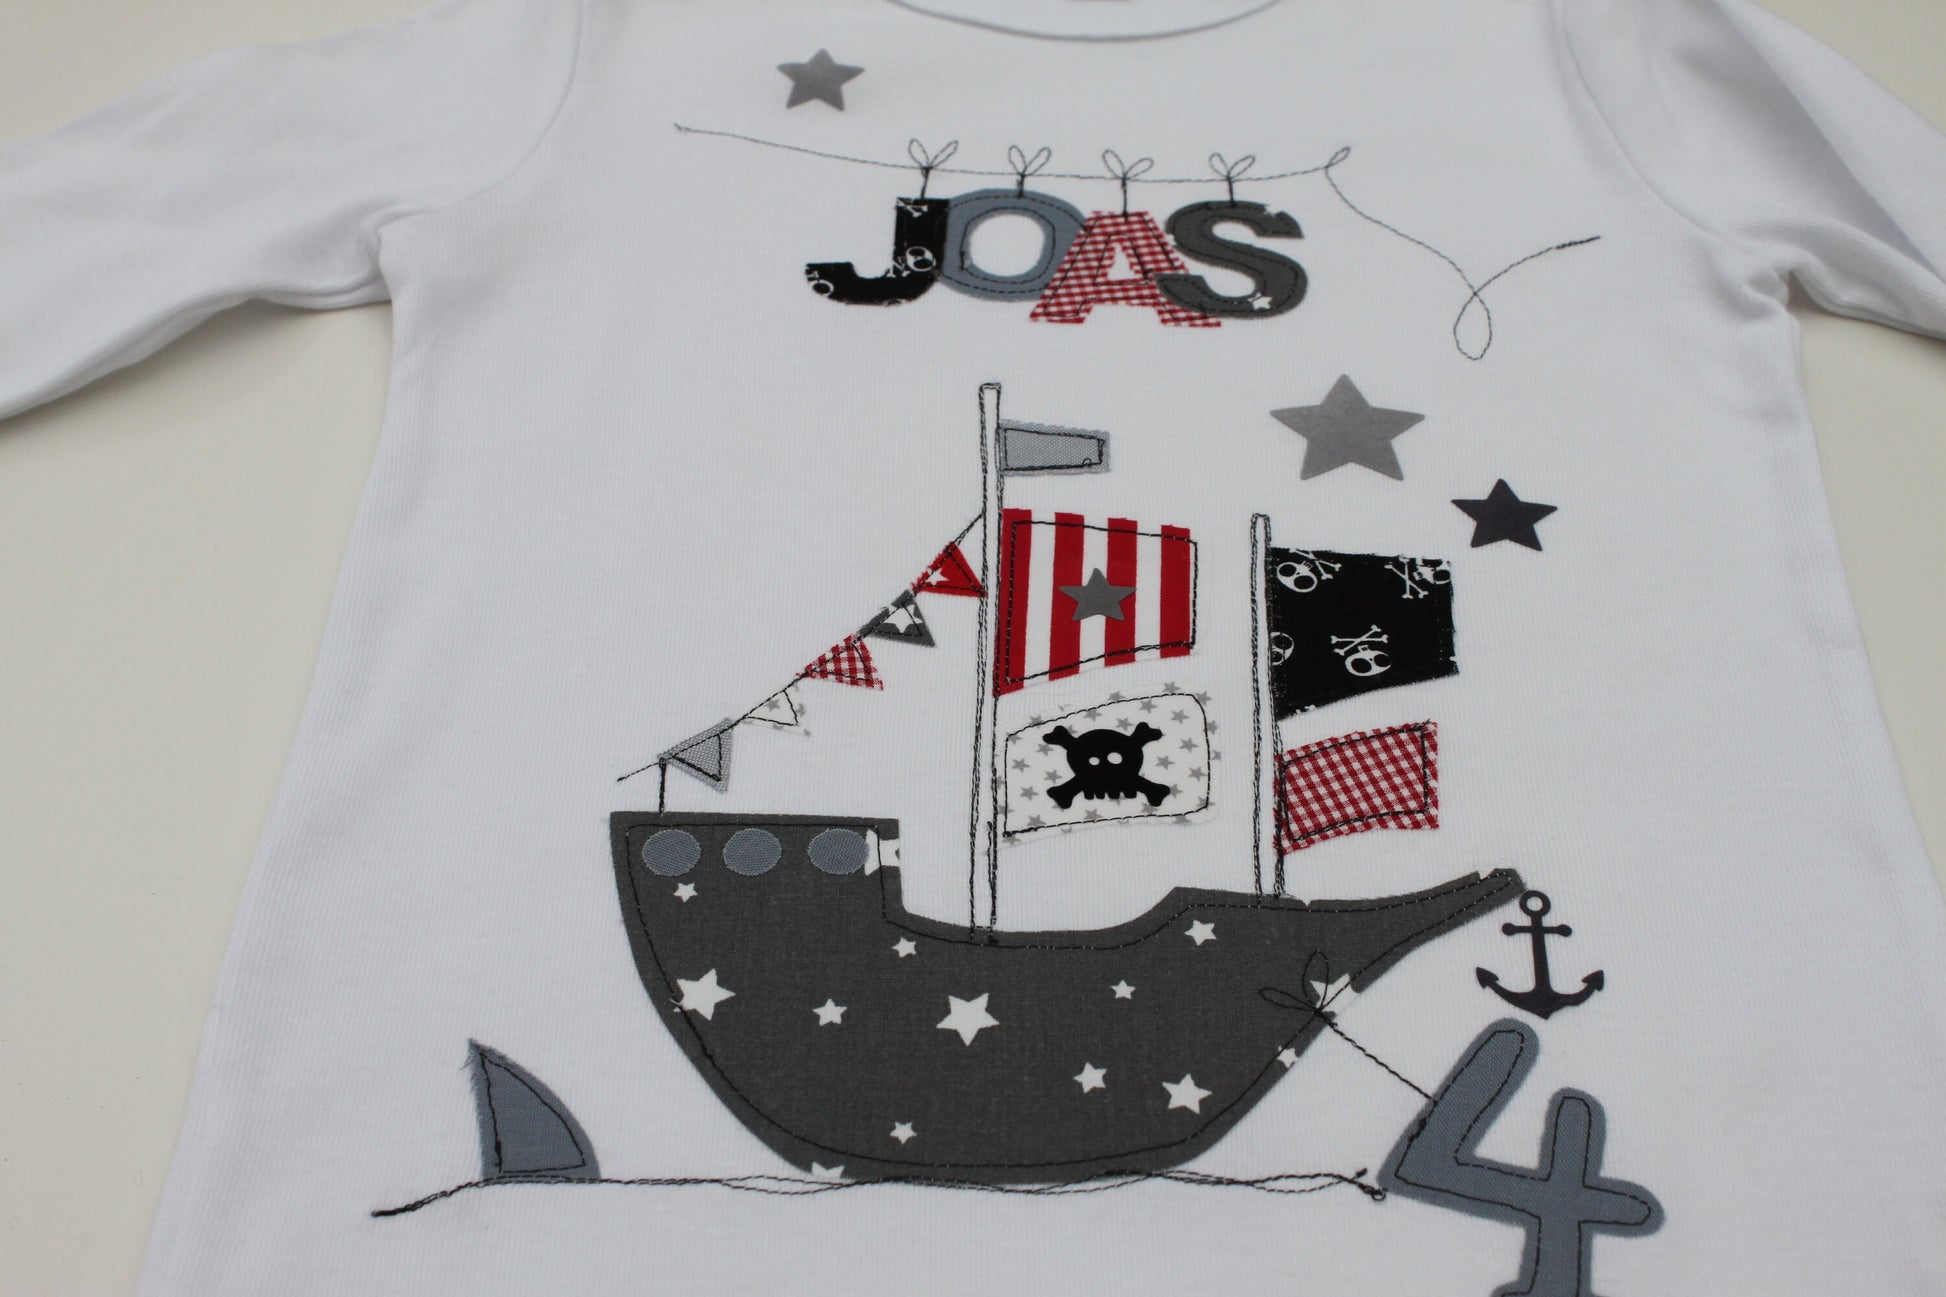 Geburtstagsshirt Kinder,Geburtstagsshirt,Shirt für Jungen,Shirt mit Name,Shirt mit Zahl,Piratenschiff,Pirat,Geschenk,Shirt,Milla Louise